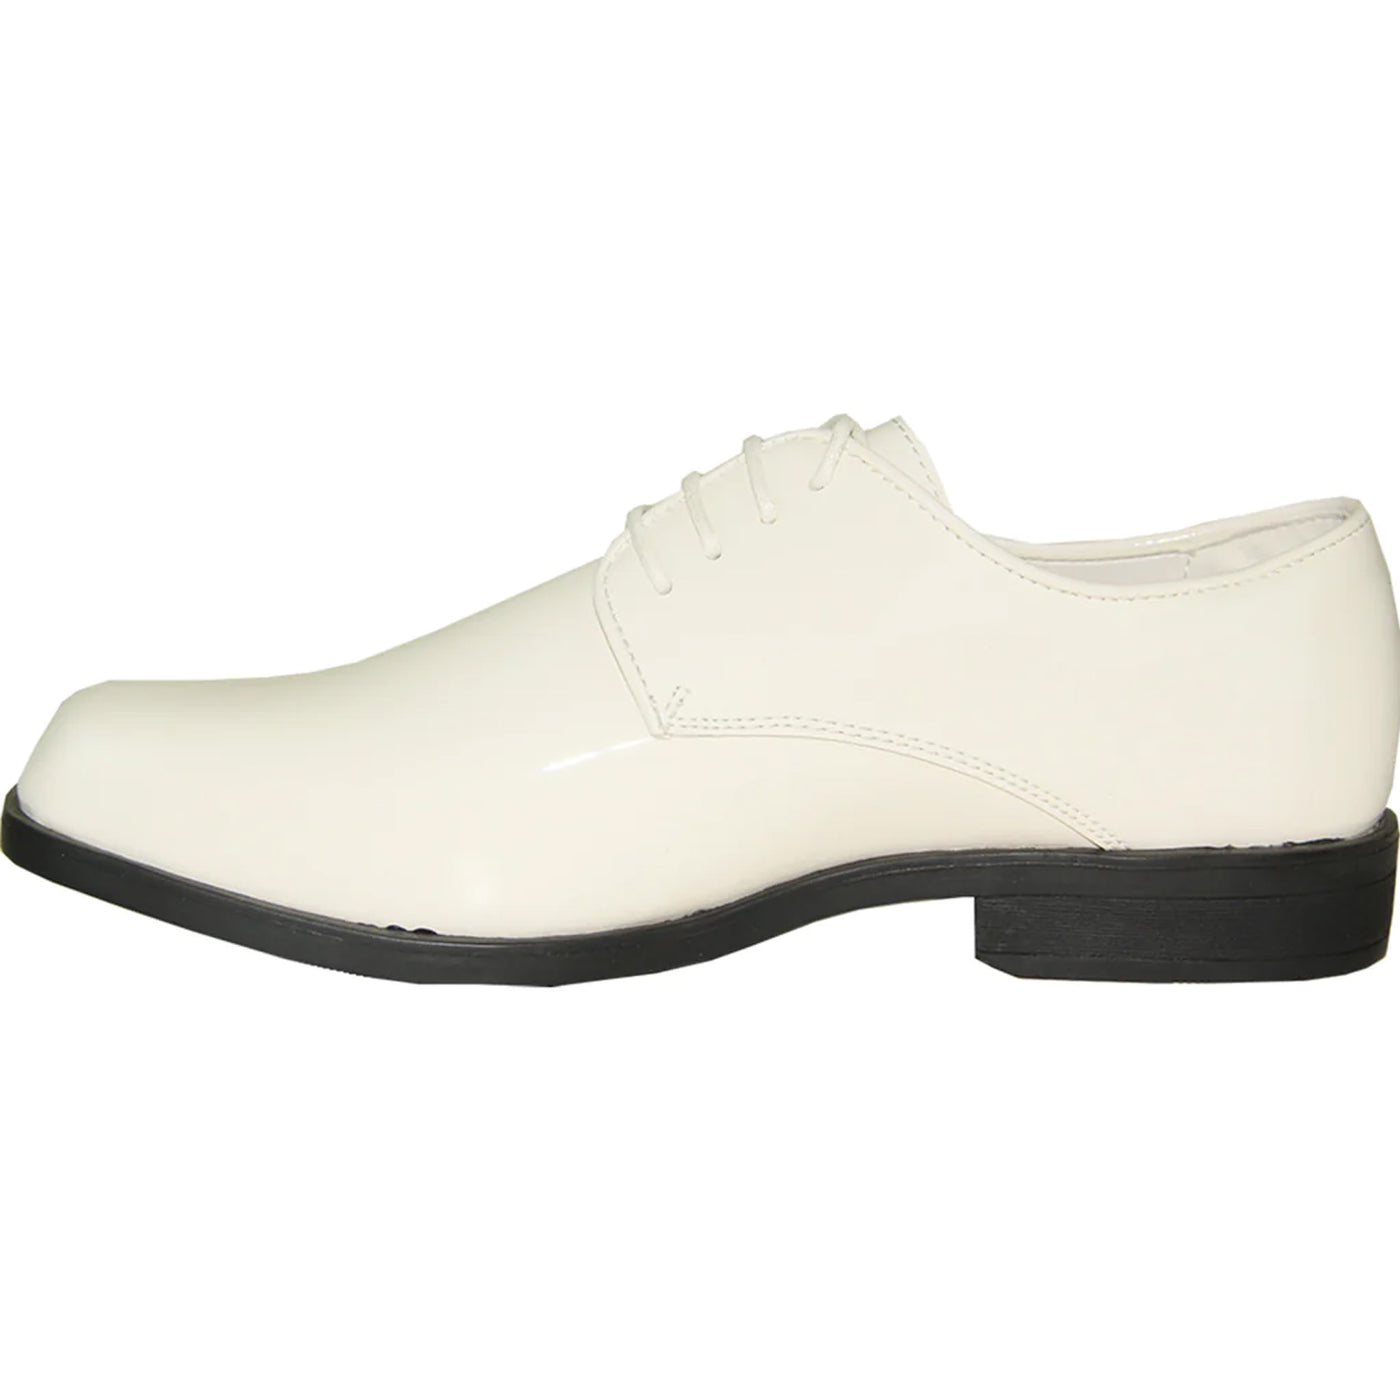 Mens Classic Plain Square Toe Shiny Patent Tuxedo Dress Shoe in Ivory